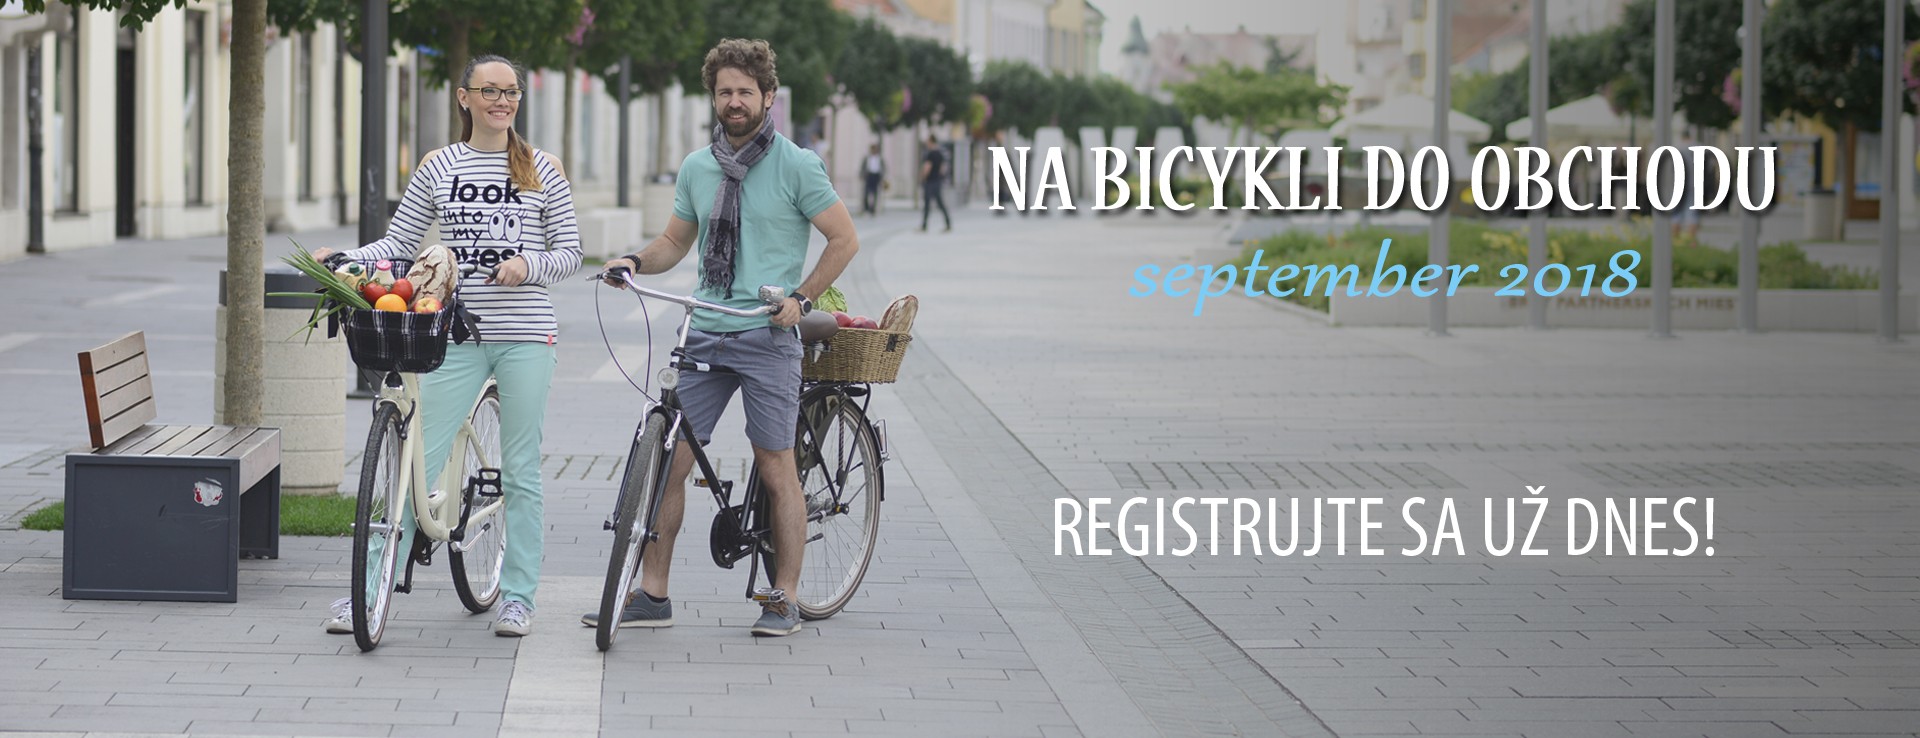 Registrácia do kampane Na bicykli do obchodu spustená